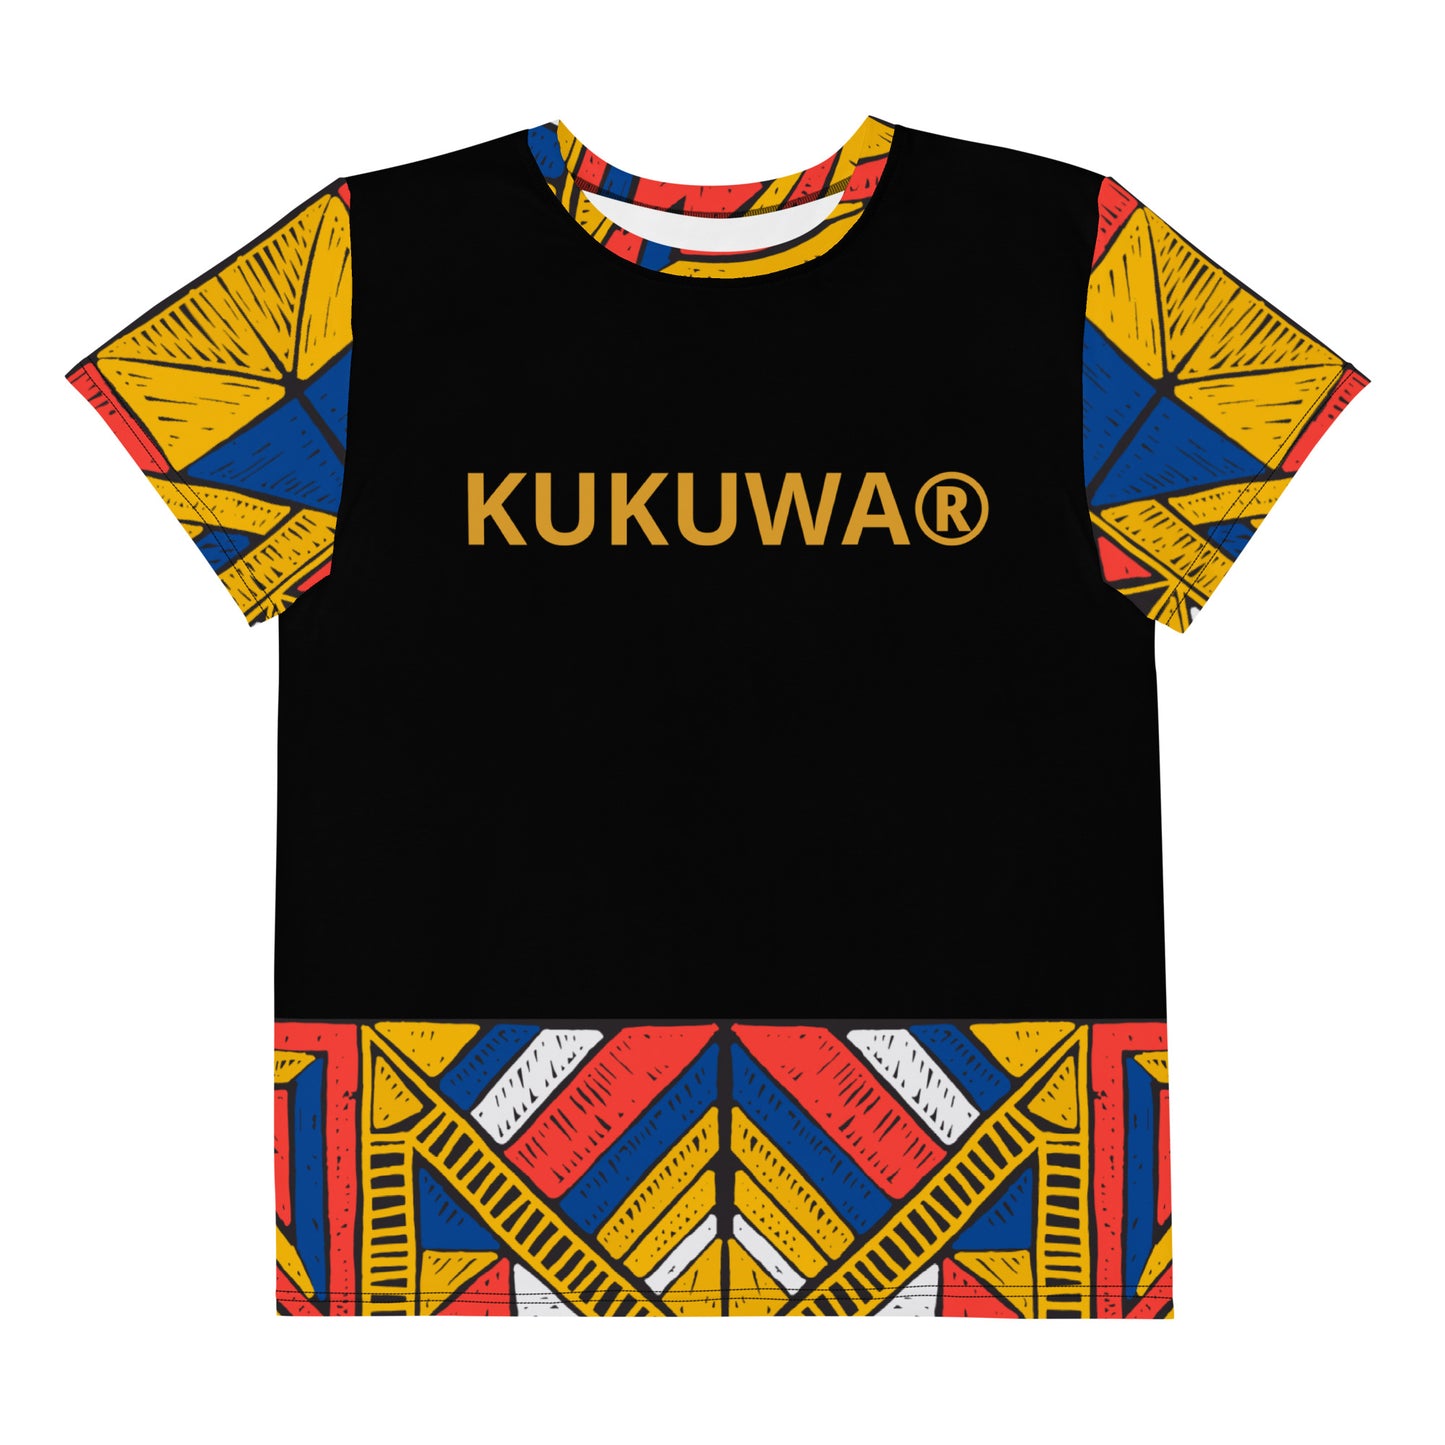 KUKUWA® Fitness Youth crew neck t-shirt